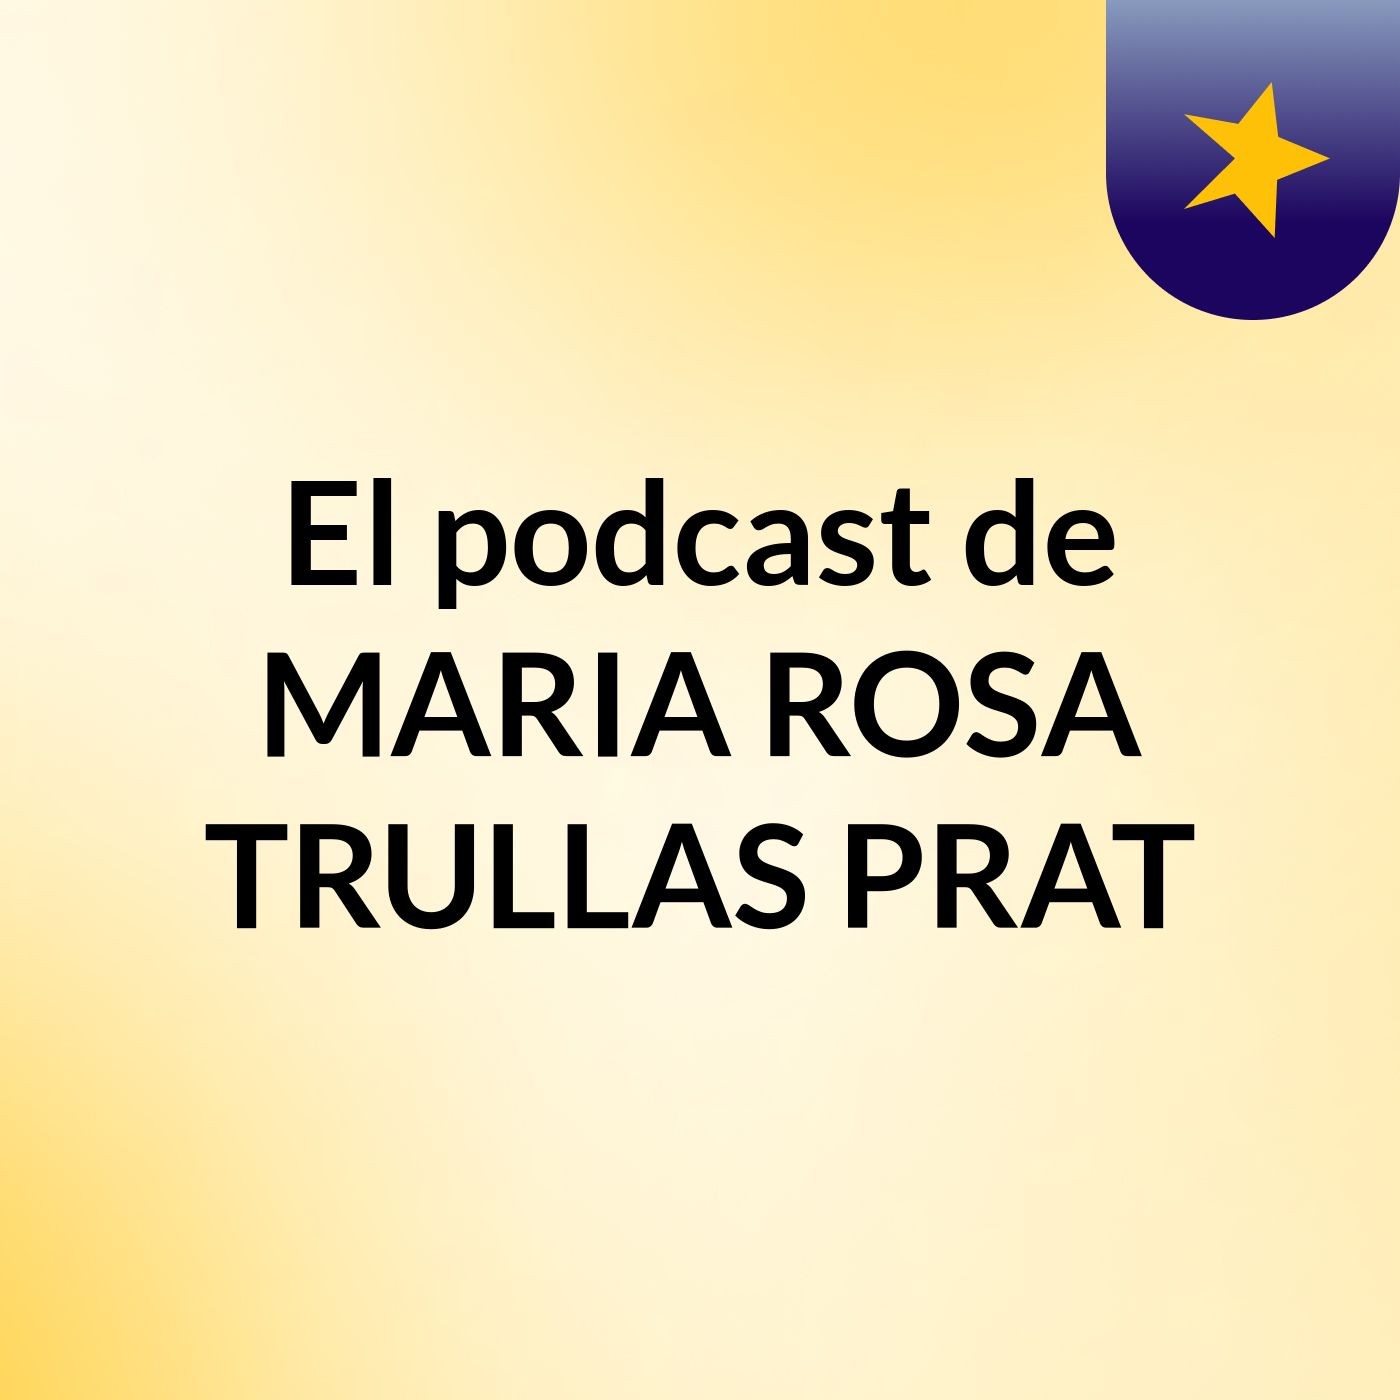 El podcast de MARIA ROSA TRULLAS PRAT